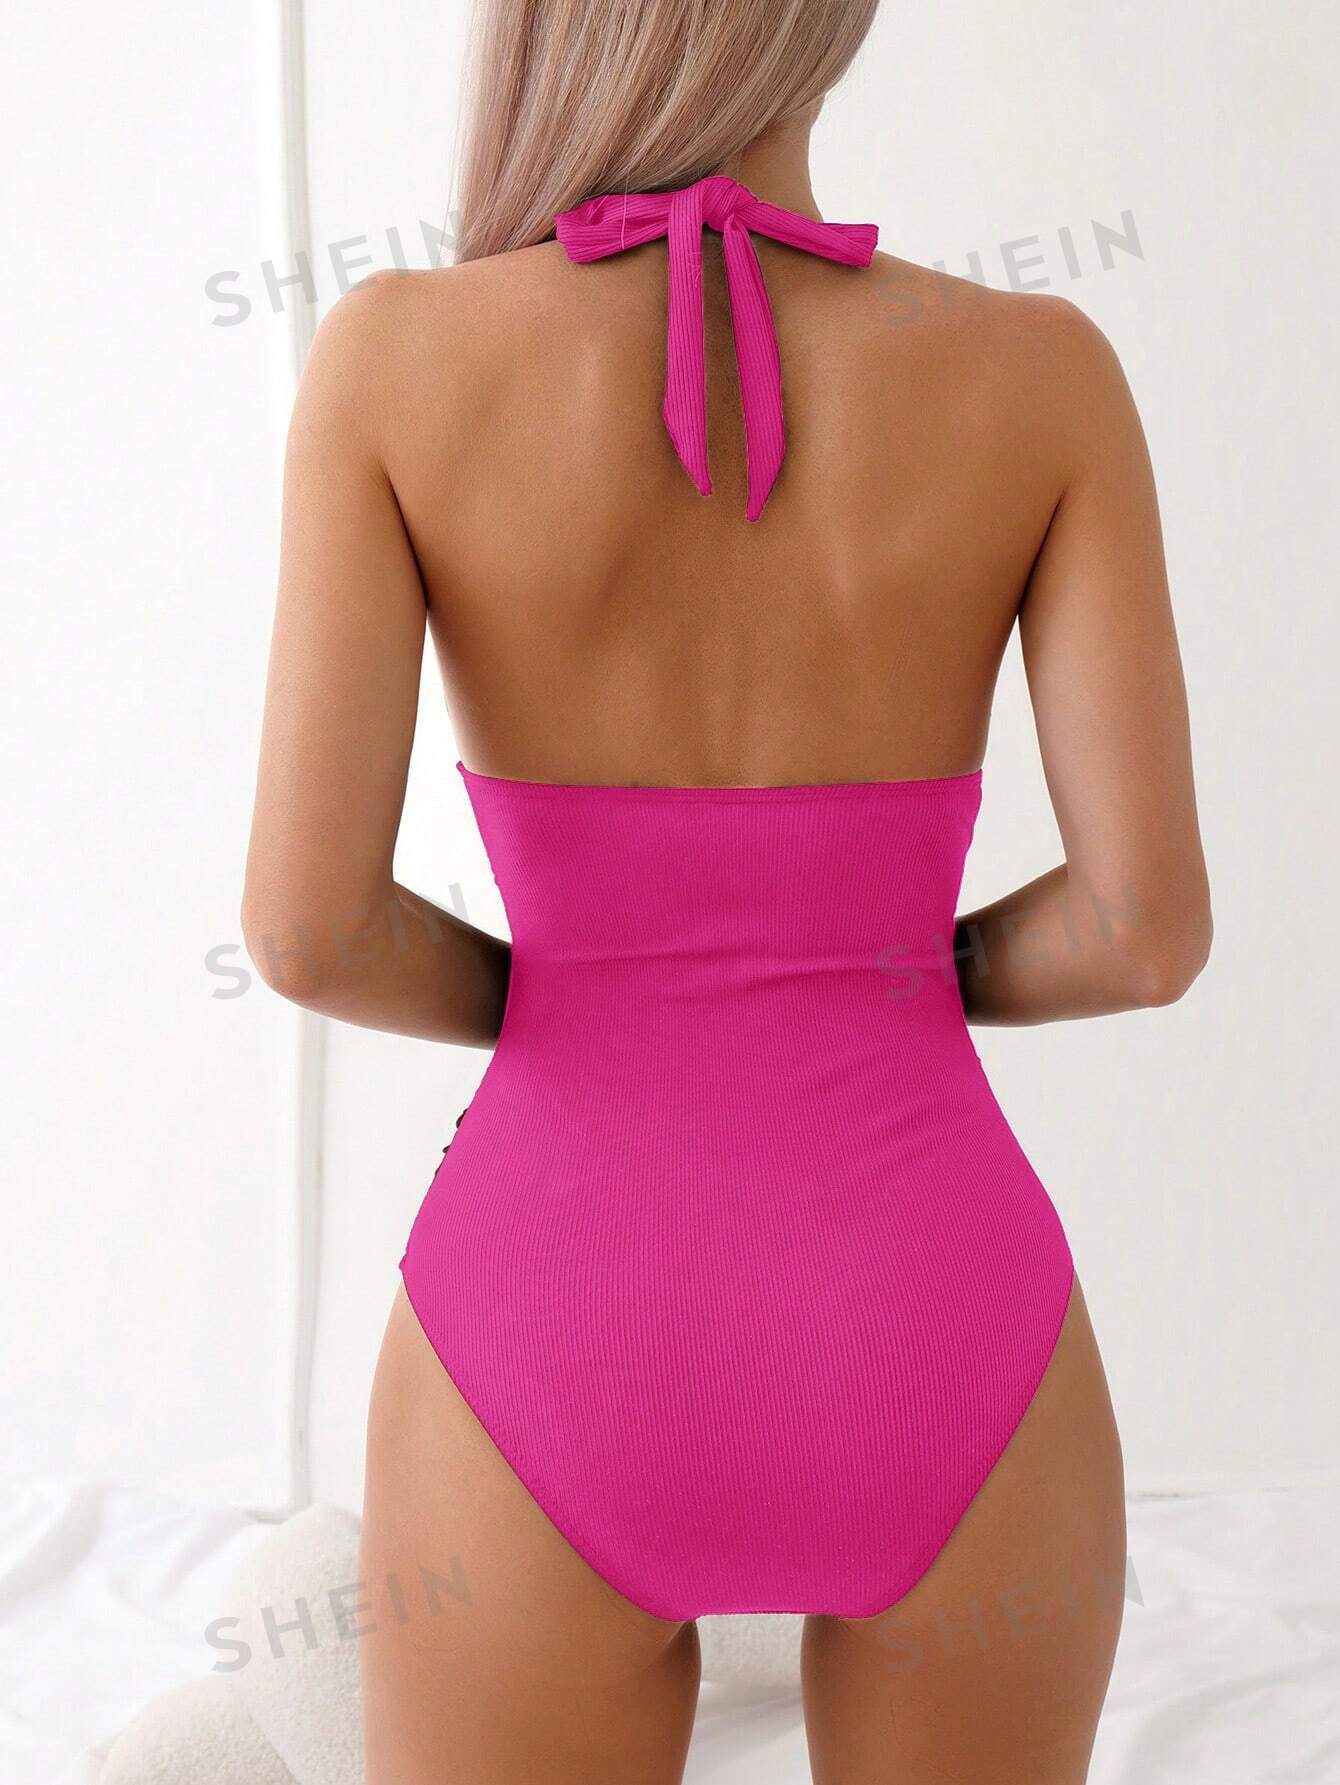 Цельный купальник с открытой спиной и бретельками сплошного цвета, ярко-розовый